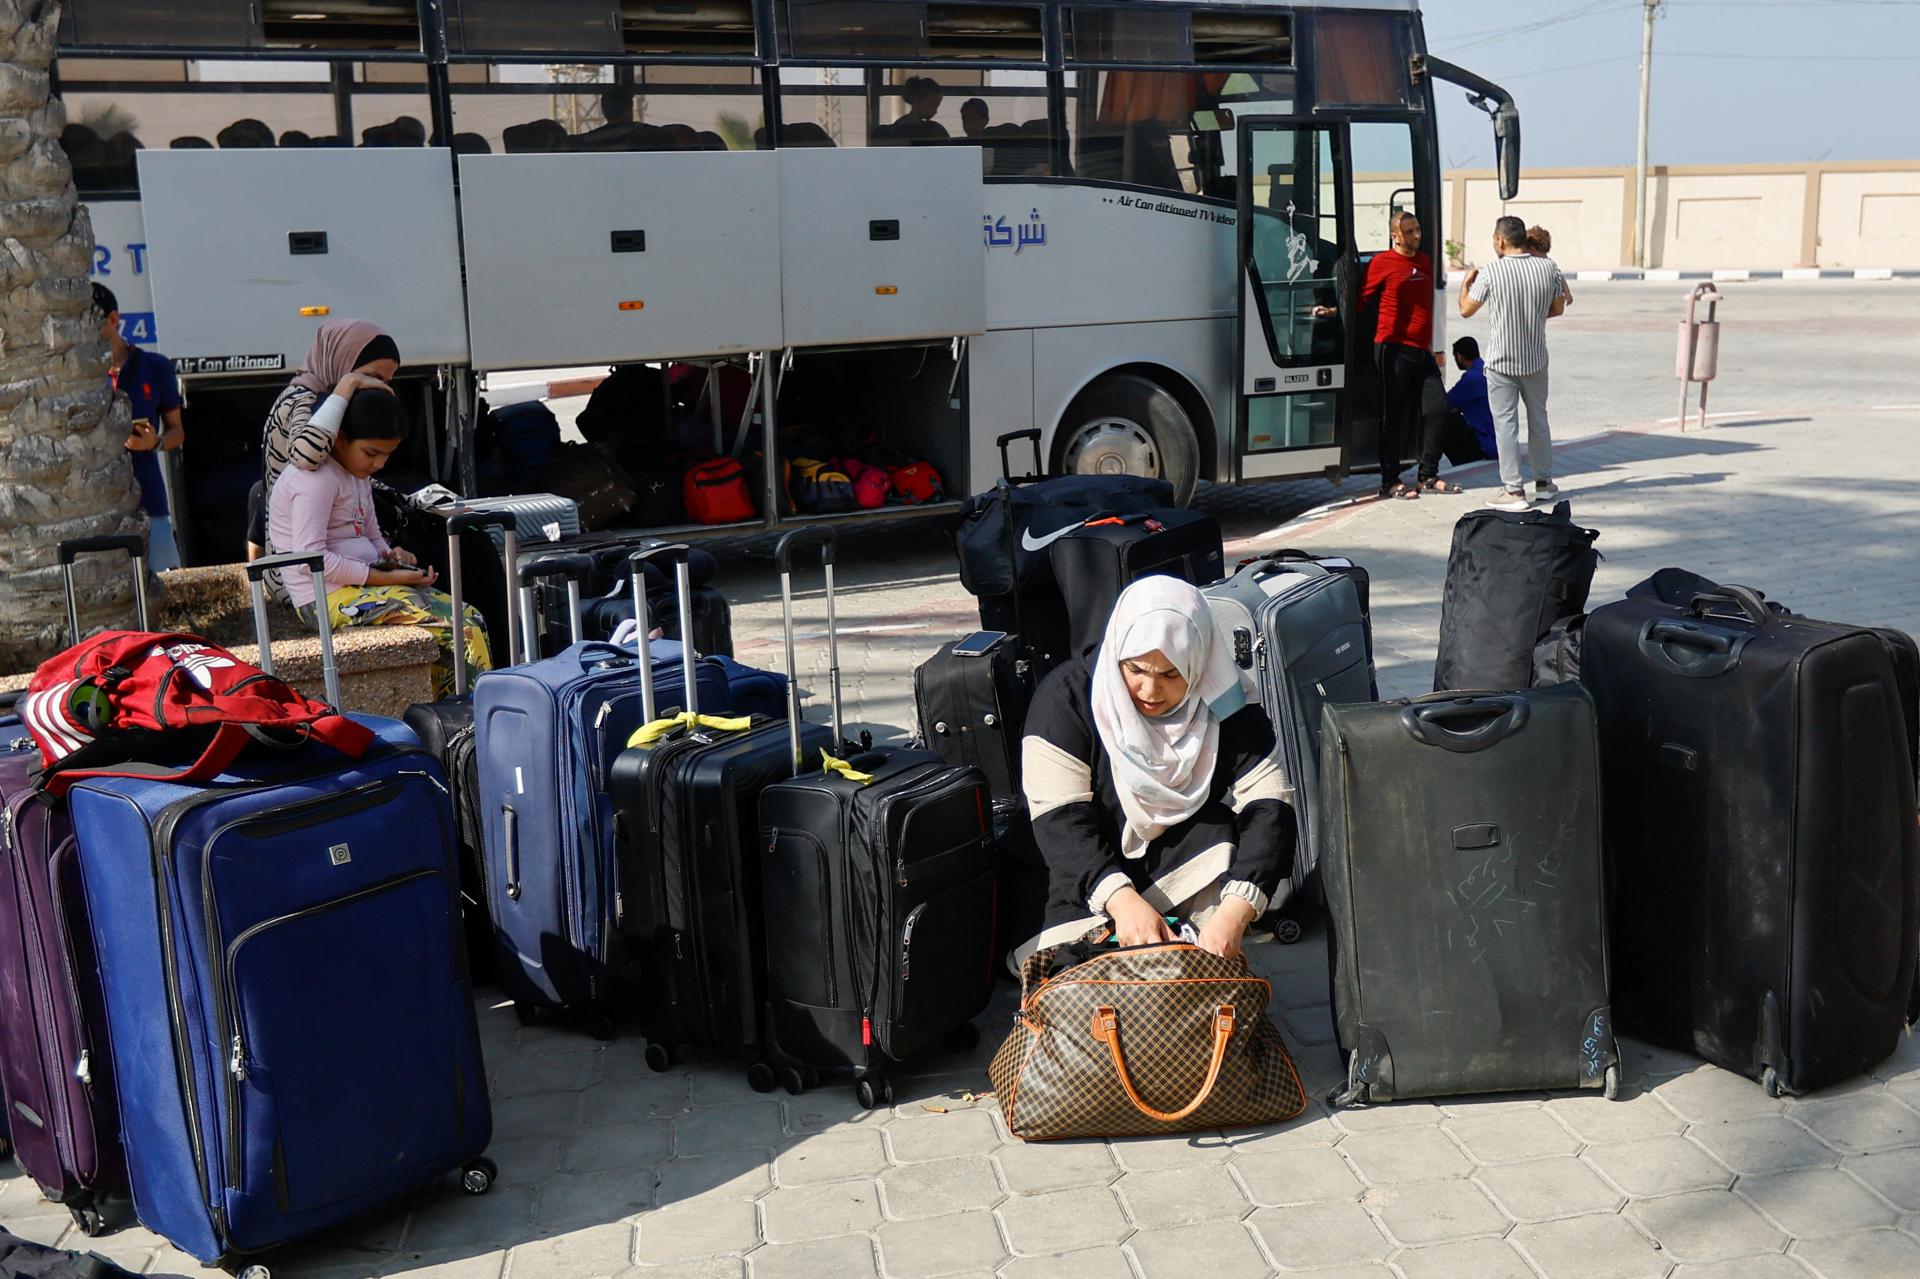 V Gaze zomrelo už takmer 10-tisíc ľudí, uzatvorený priechod Rafah skomplikoval evakuáciu
​